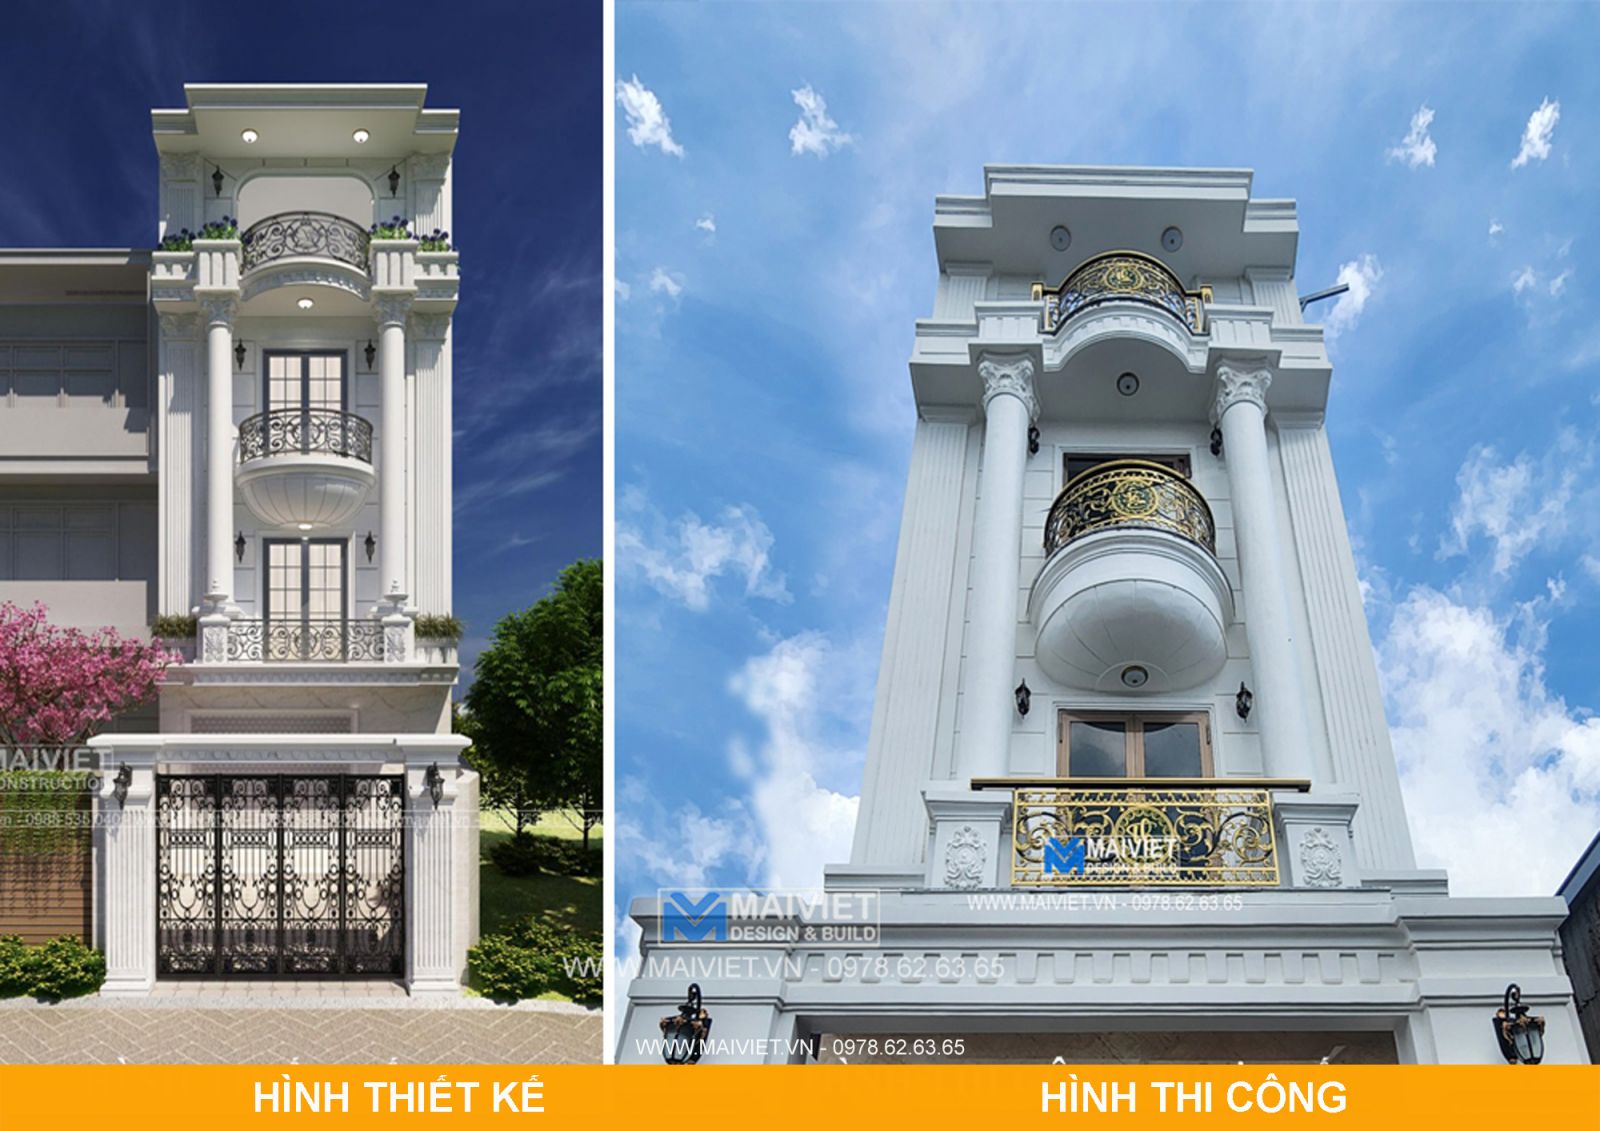 Kiến trúc Mai Việt - Maiviet.vn